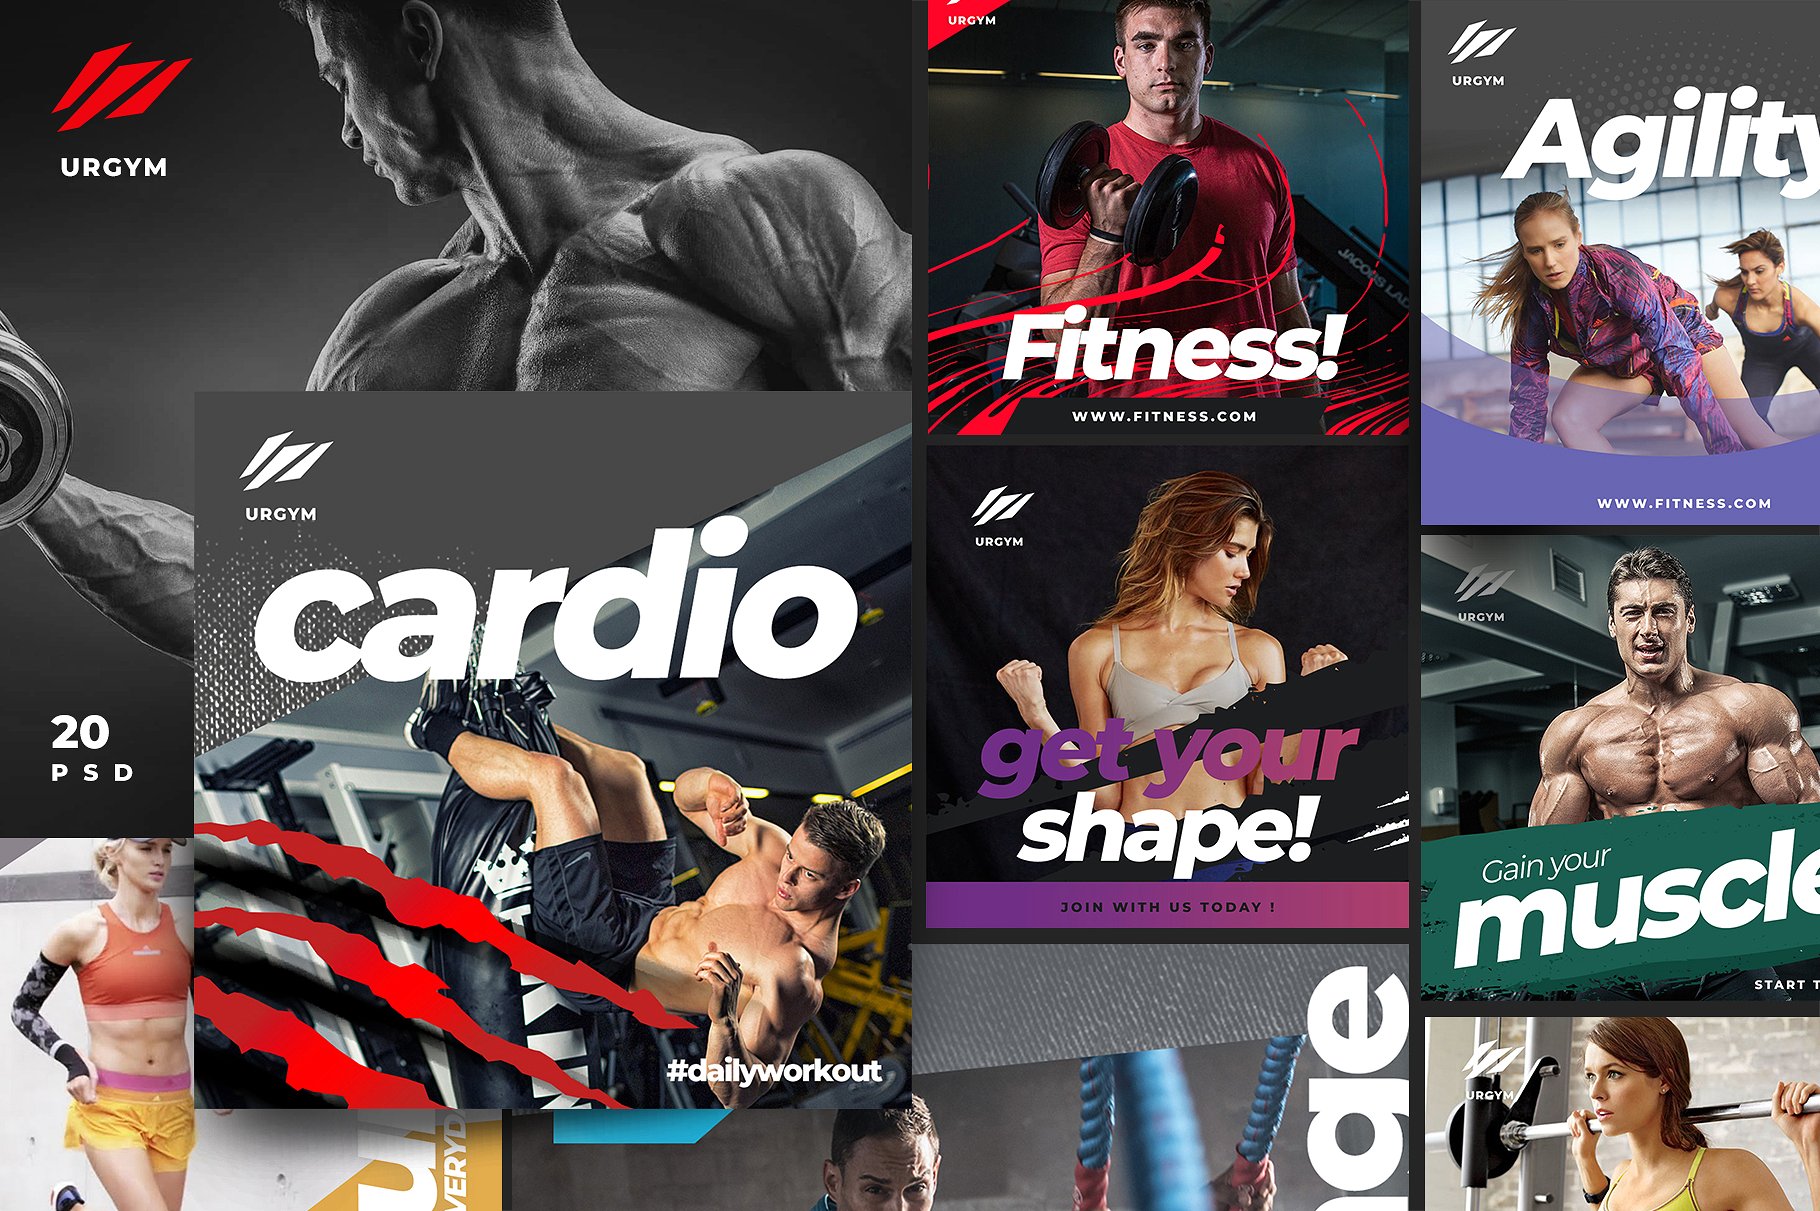 时尚健身&健身器材的instagram社交媒体模板蚂蚁素材精选 Fitness & Gym instagram pack 2.0 [psd]插图